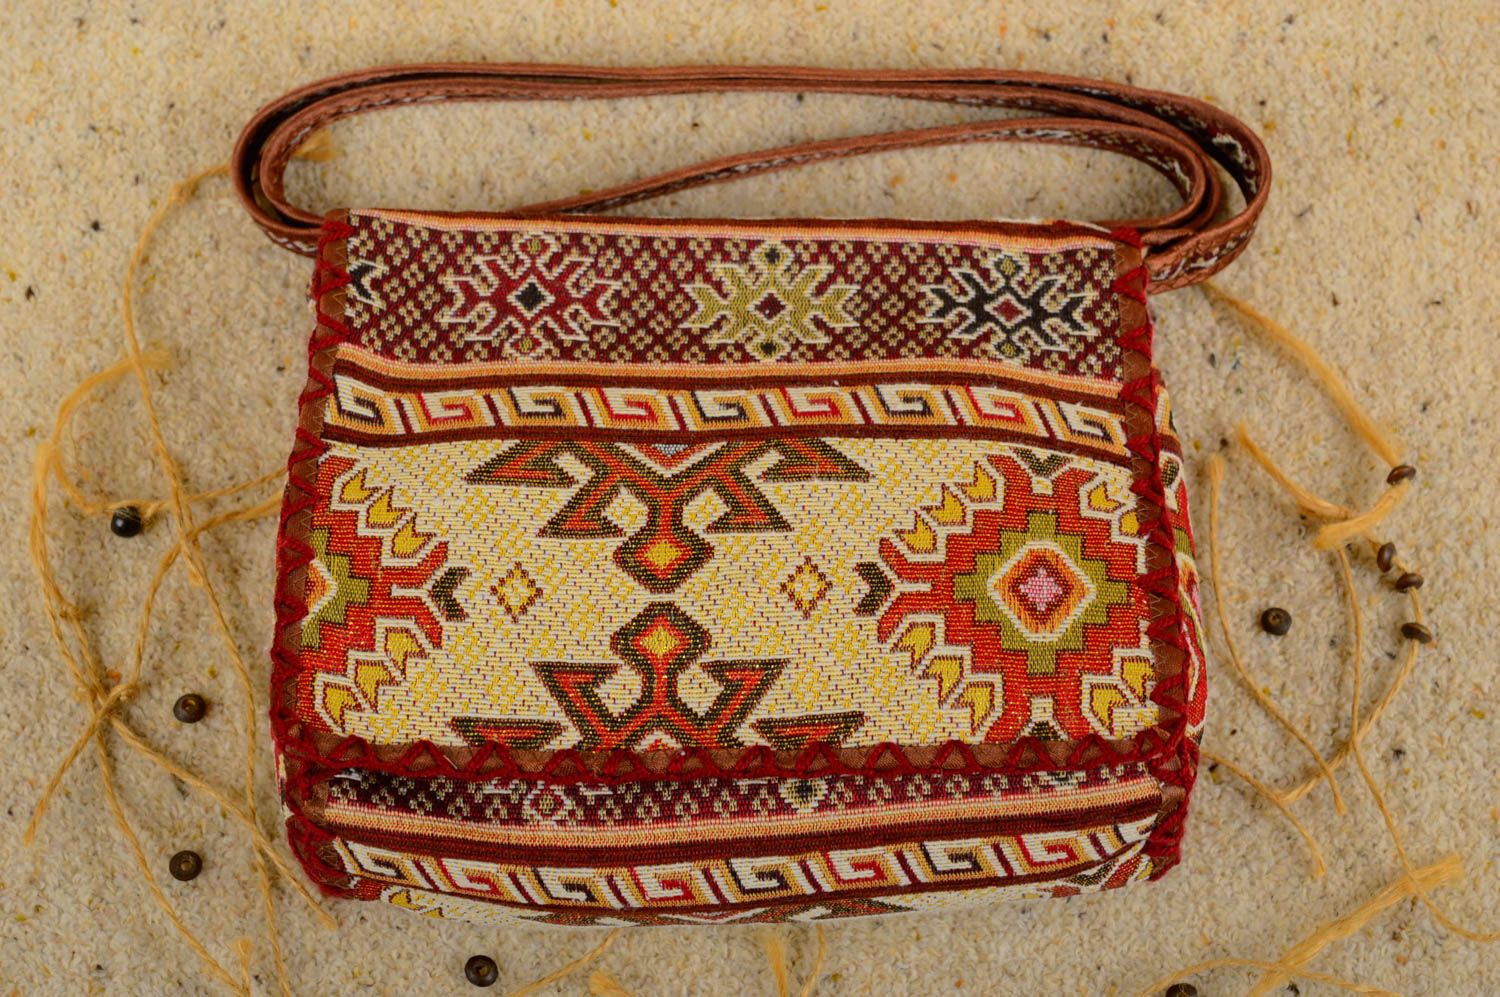 Sac bandoulière en tissu Sac fait main avec motifs ethniques Accessoire femme photo 1